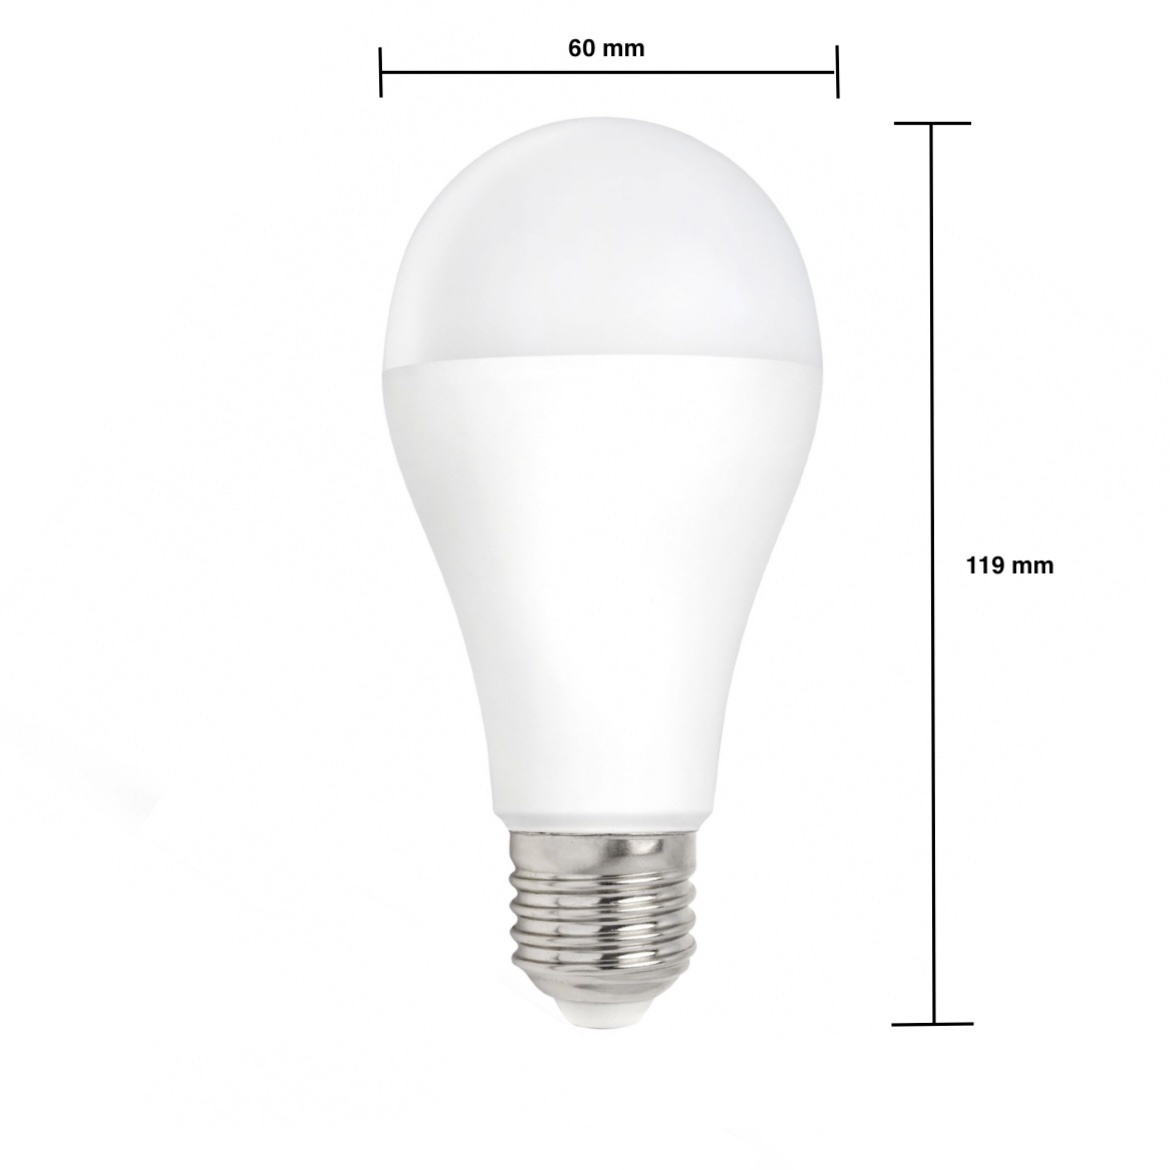 LED pære dæmpbar - E27-fatning - 12W erstatter - Naturligt hvidt lys 4000K - Ledpaneler.dk